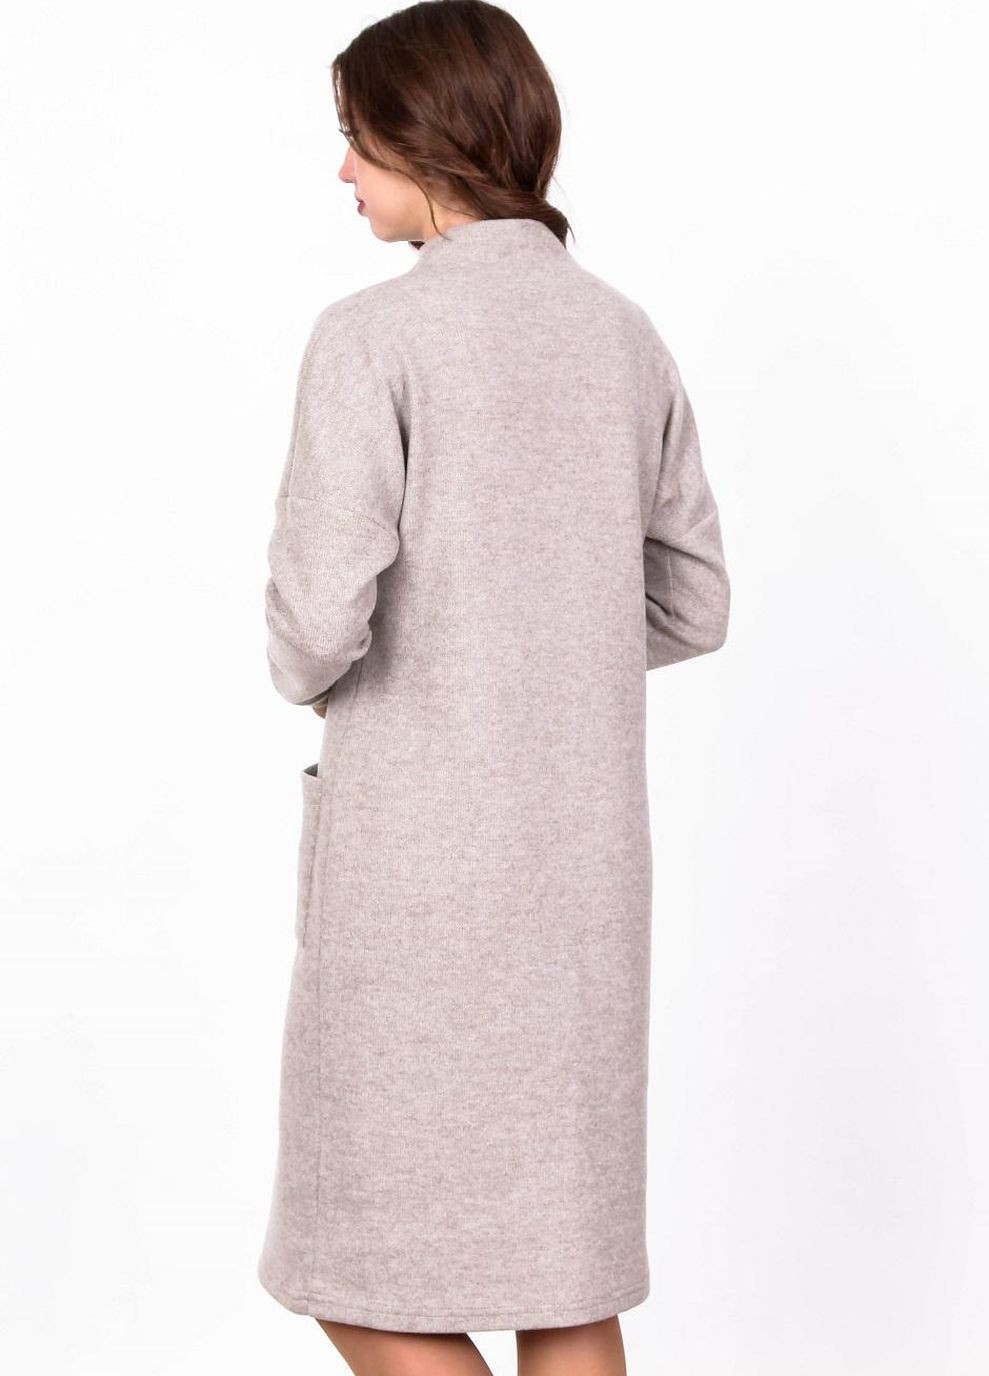 Бежевое кэжуал платье теплое женское 114 однотонный ангора вязка бежевое Актуаль